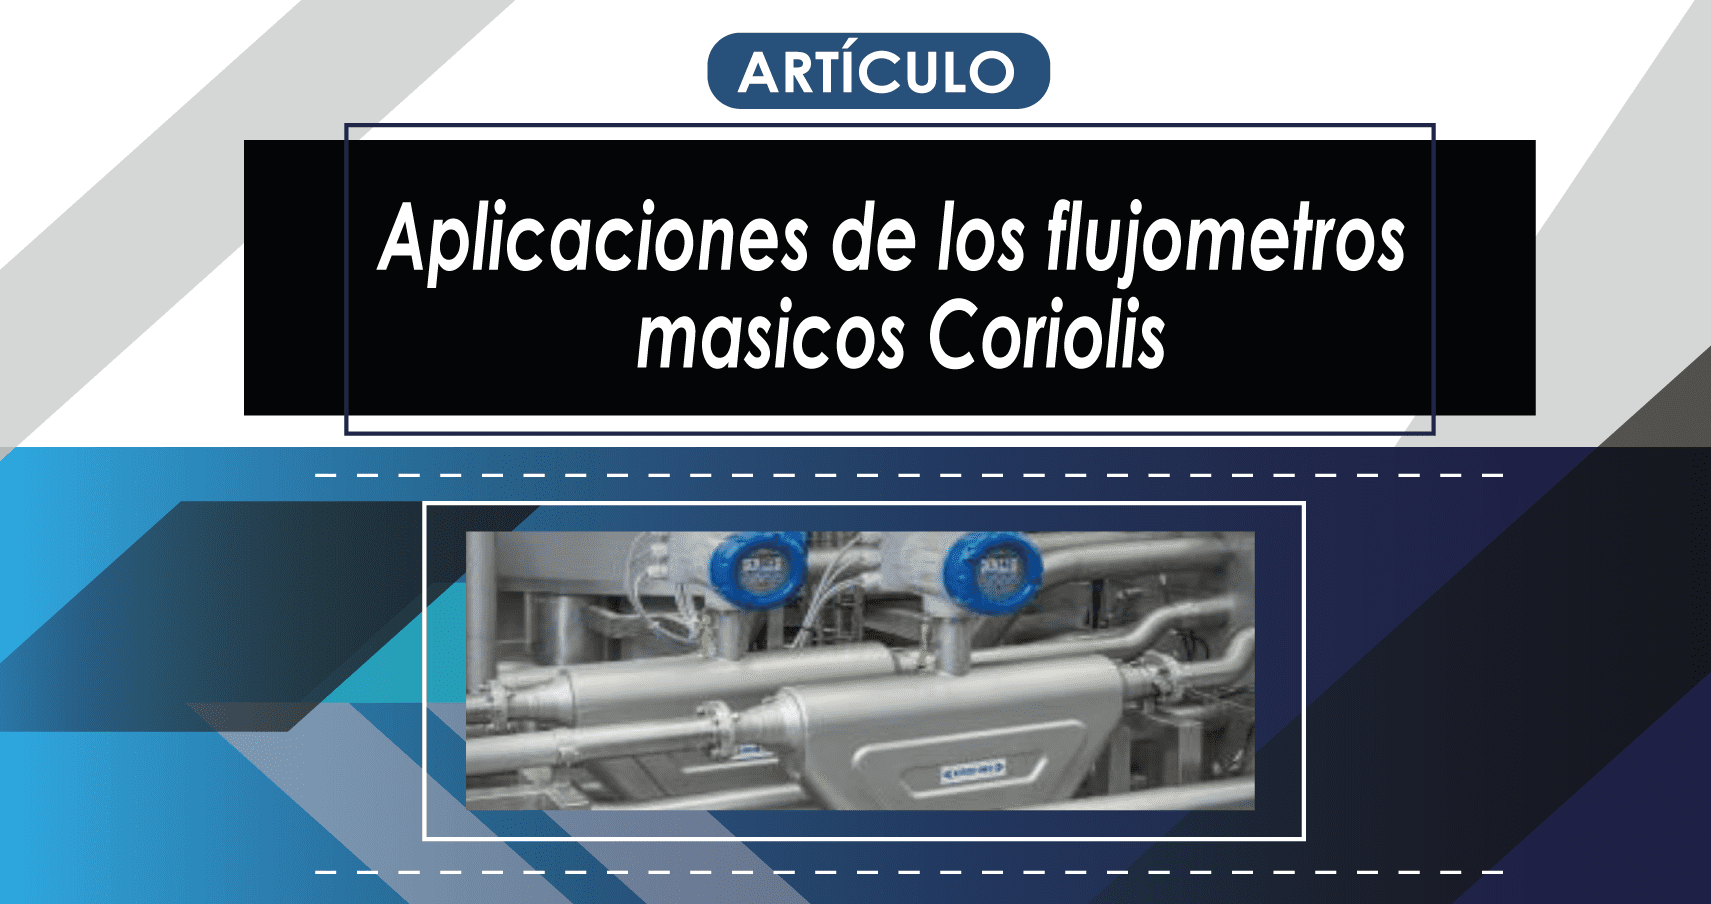 ARTICULO

Aplicaciones de los flujometros
masicos Coriolis